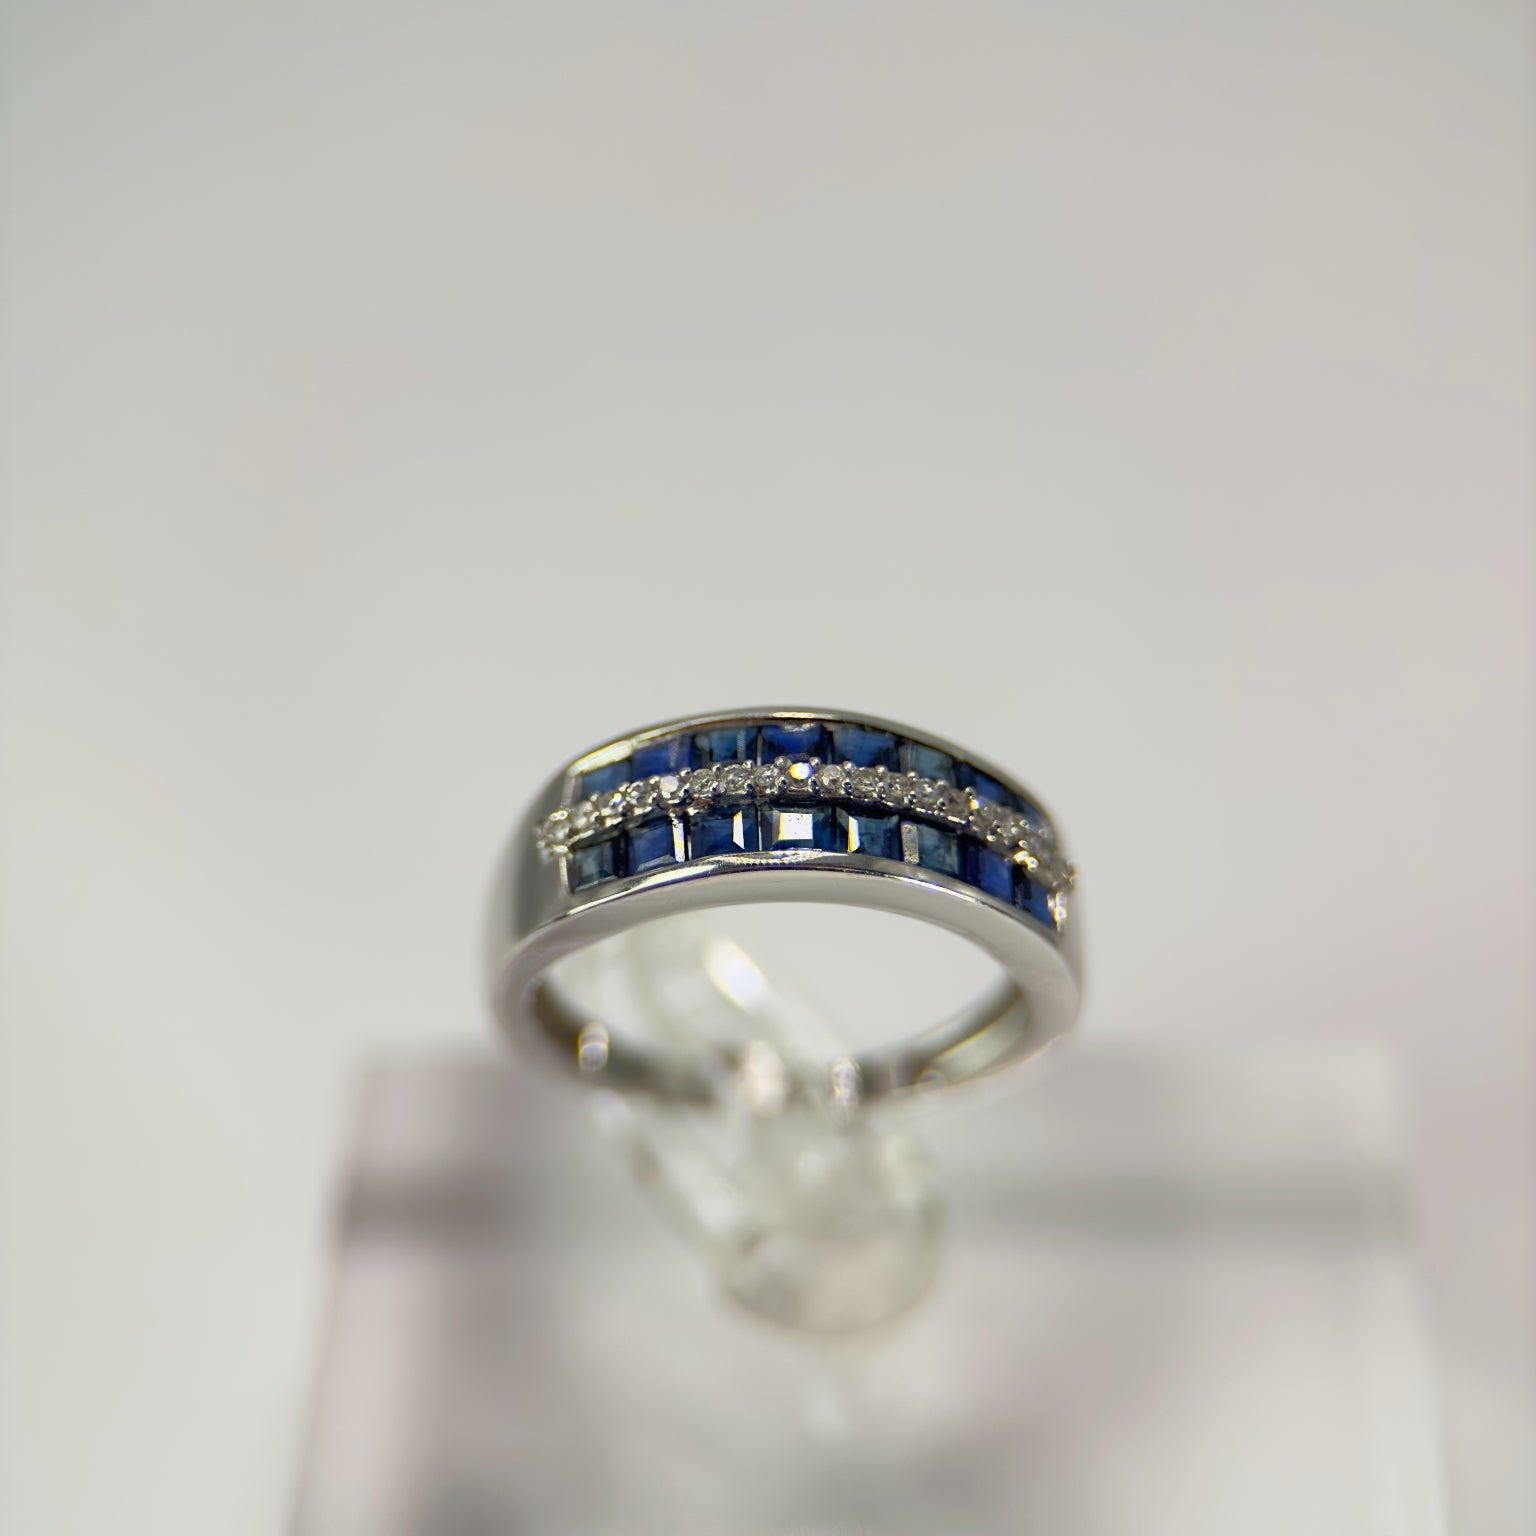 DR1443 - Oro blanco de 14 quilates - Redondo (pavé) - Diamante - Anillos de diamantes y piedras preciosas para mujer